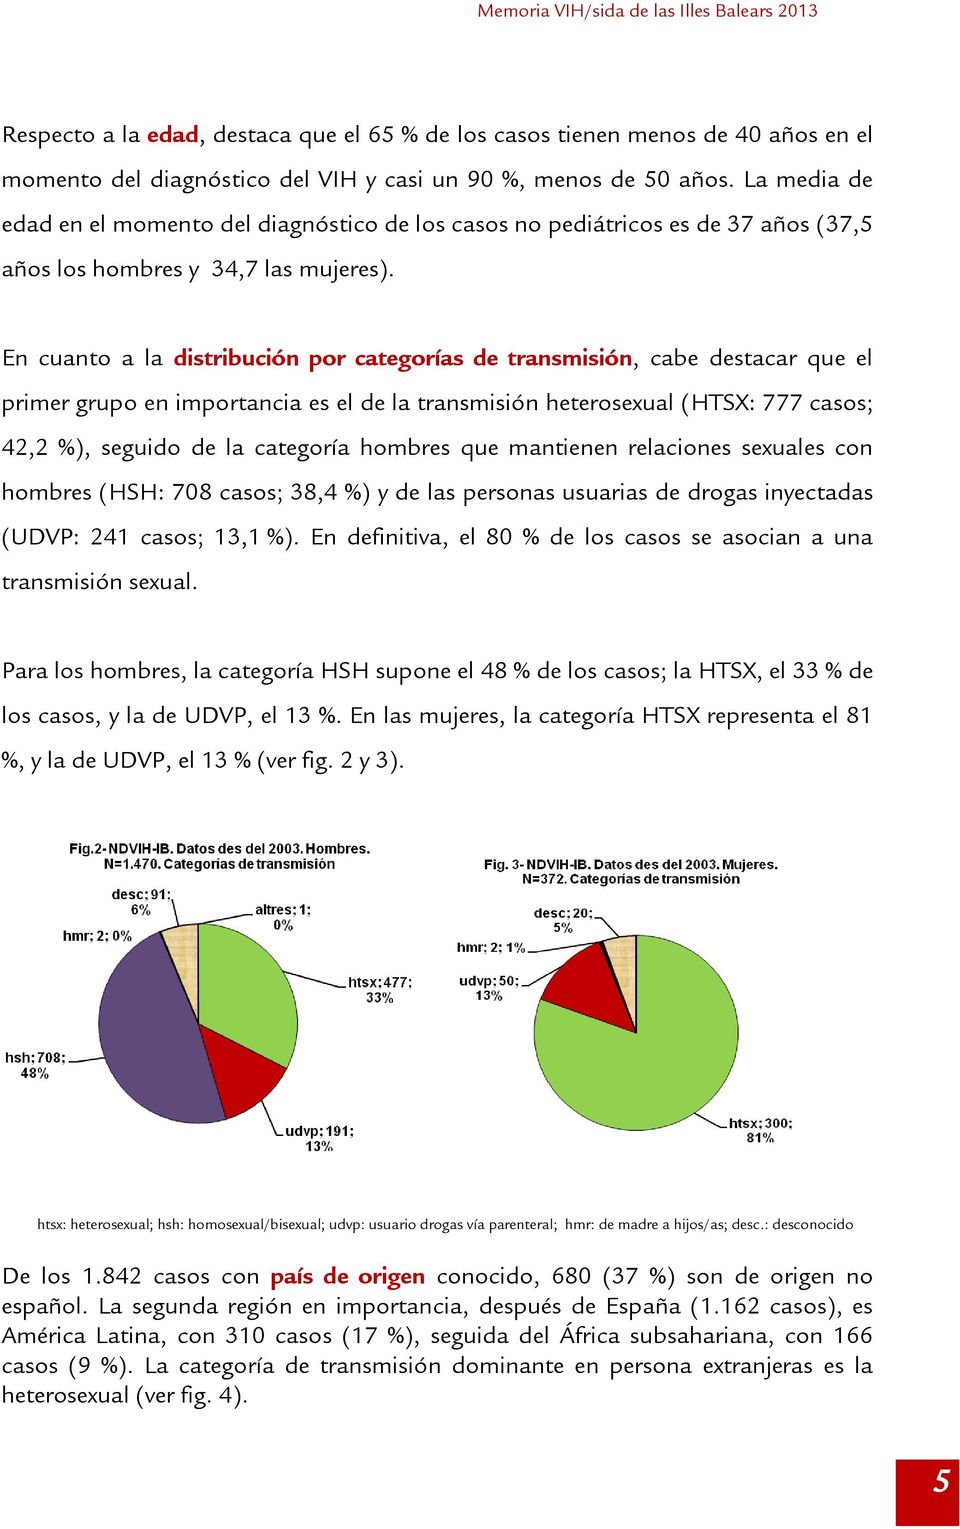 En cuanto a la distribución por categorías de transmisión, cabe destacar que el primer grupo en importancia es el de la transmisión heterosexual (HTSX: 777 casos; 42,2 %), seguido de la categoría